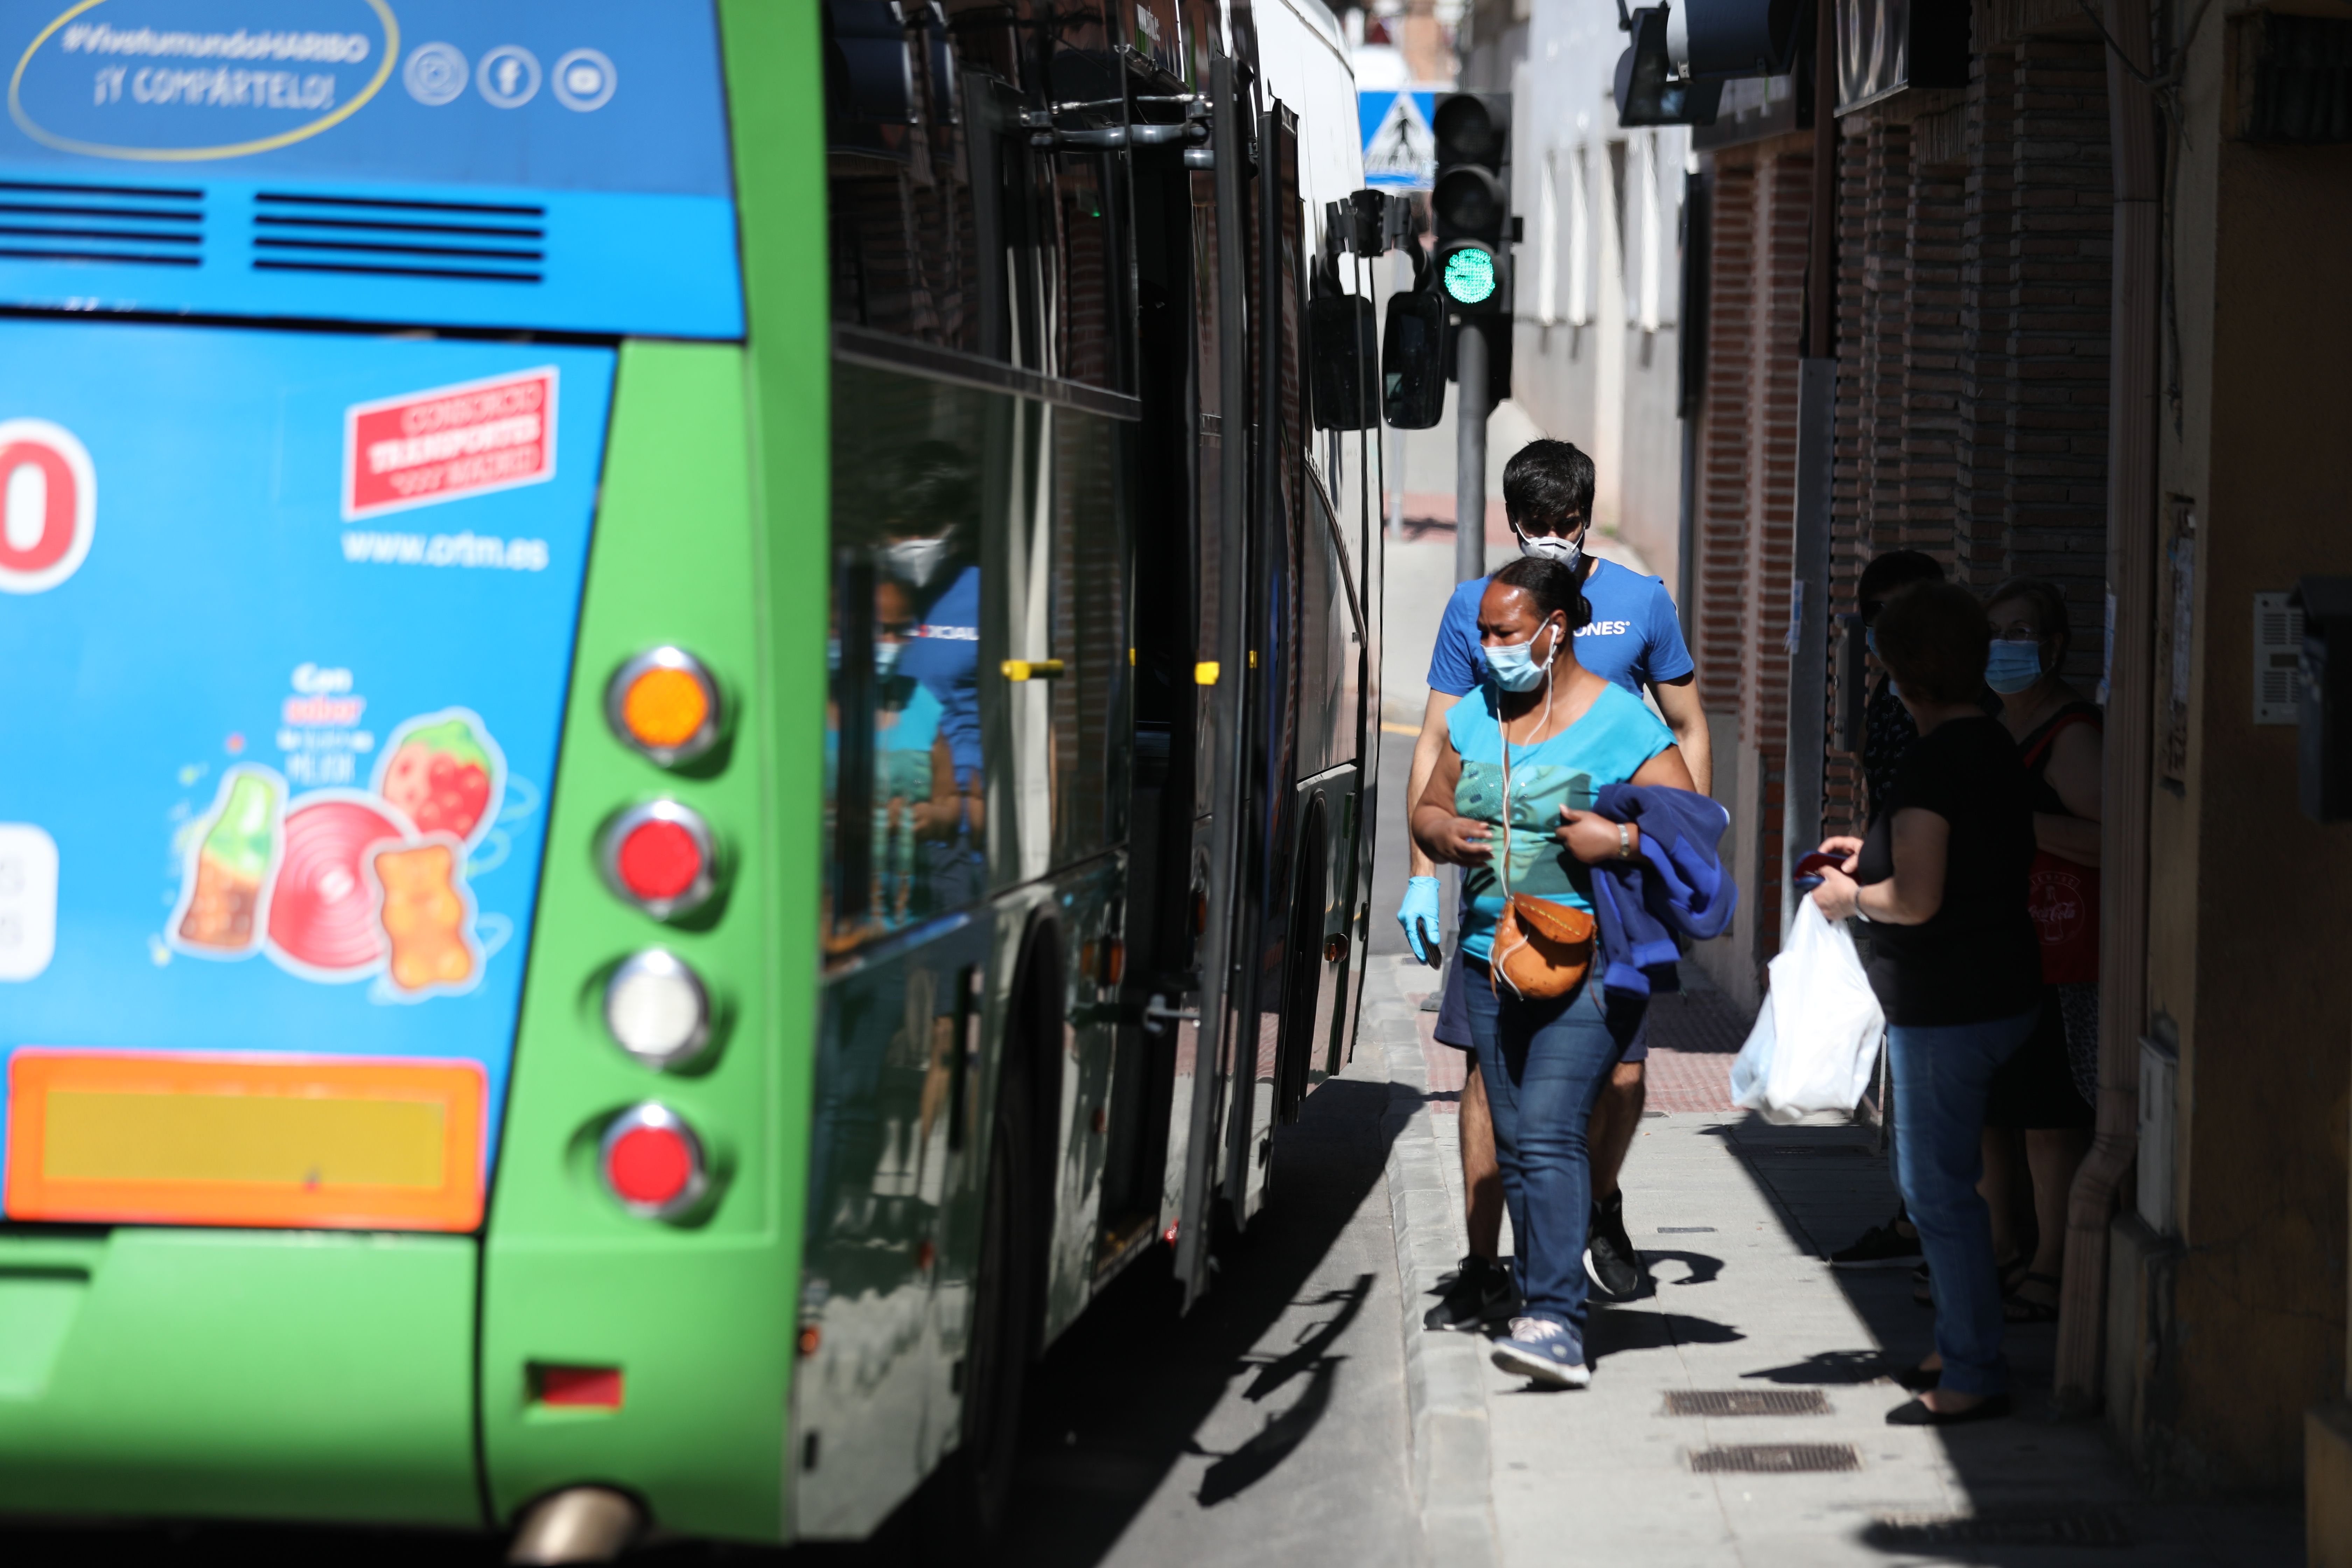 Autobuses y trenes podrán ocupar todos sus asientos desde este lunes en toda España